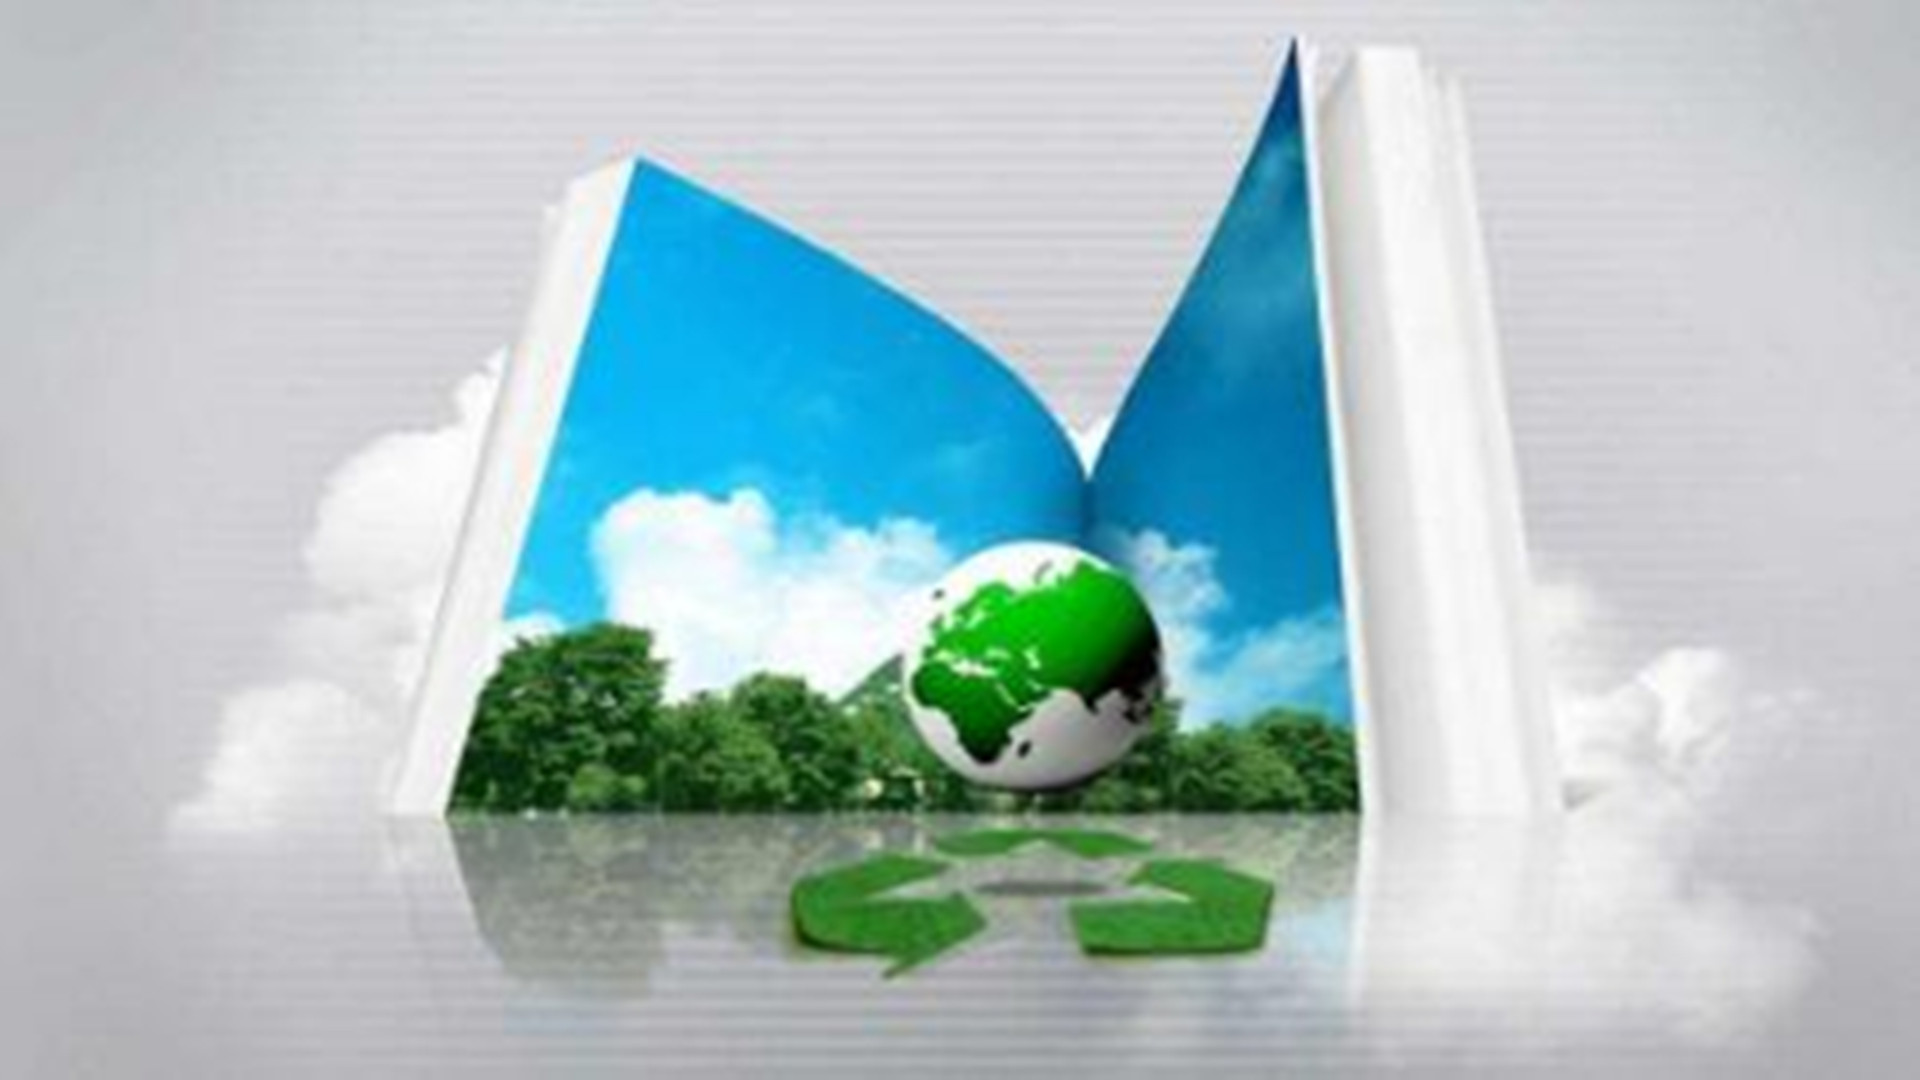 建筑节能保温材料绿色化 真空保温板等直接受益